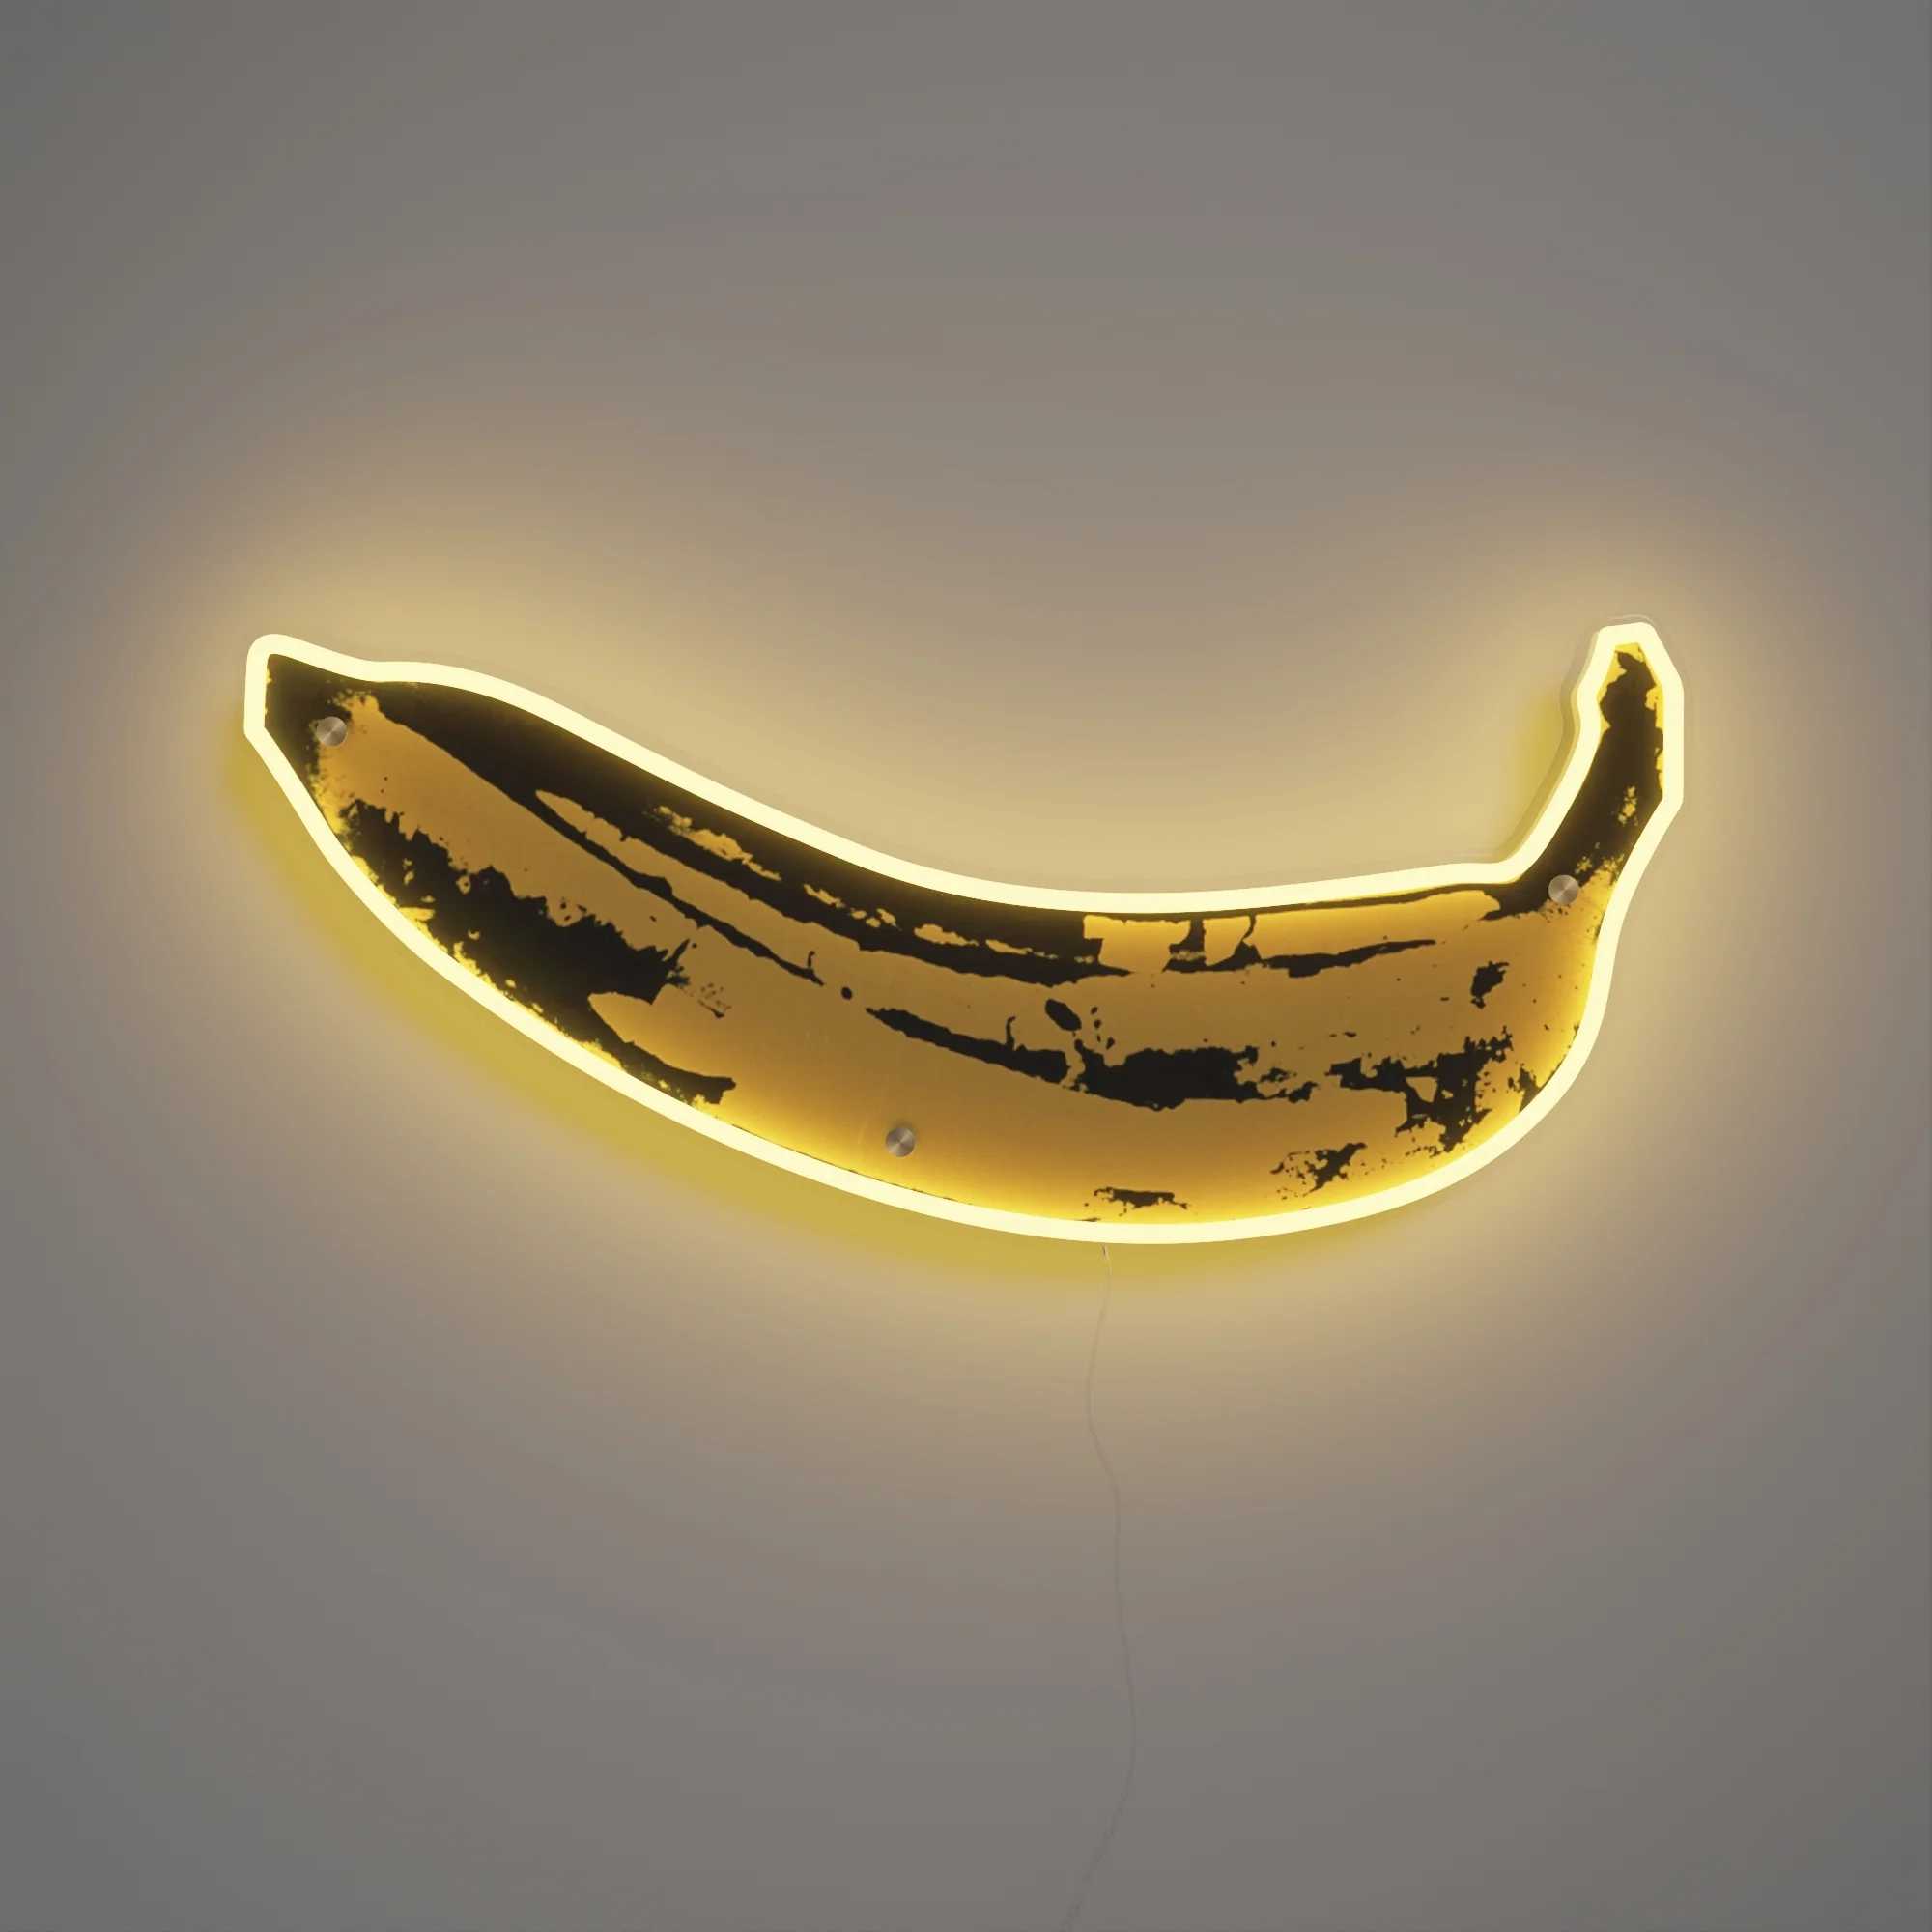 Andy Warhol Yellowpop Banana Neon LED Wall Mounted Sign